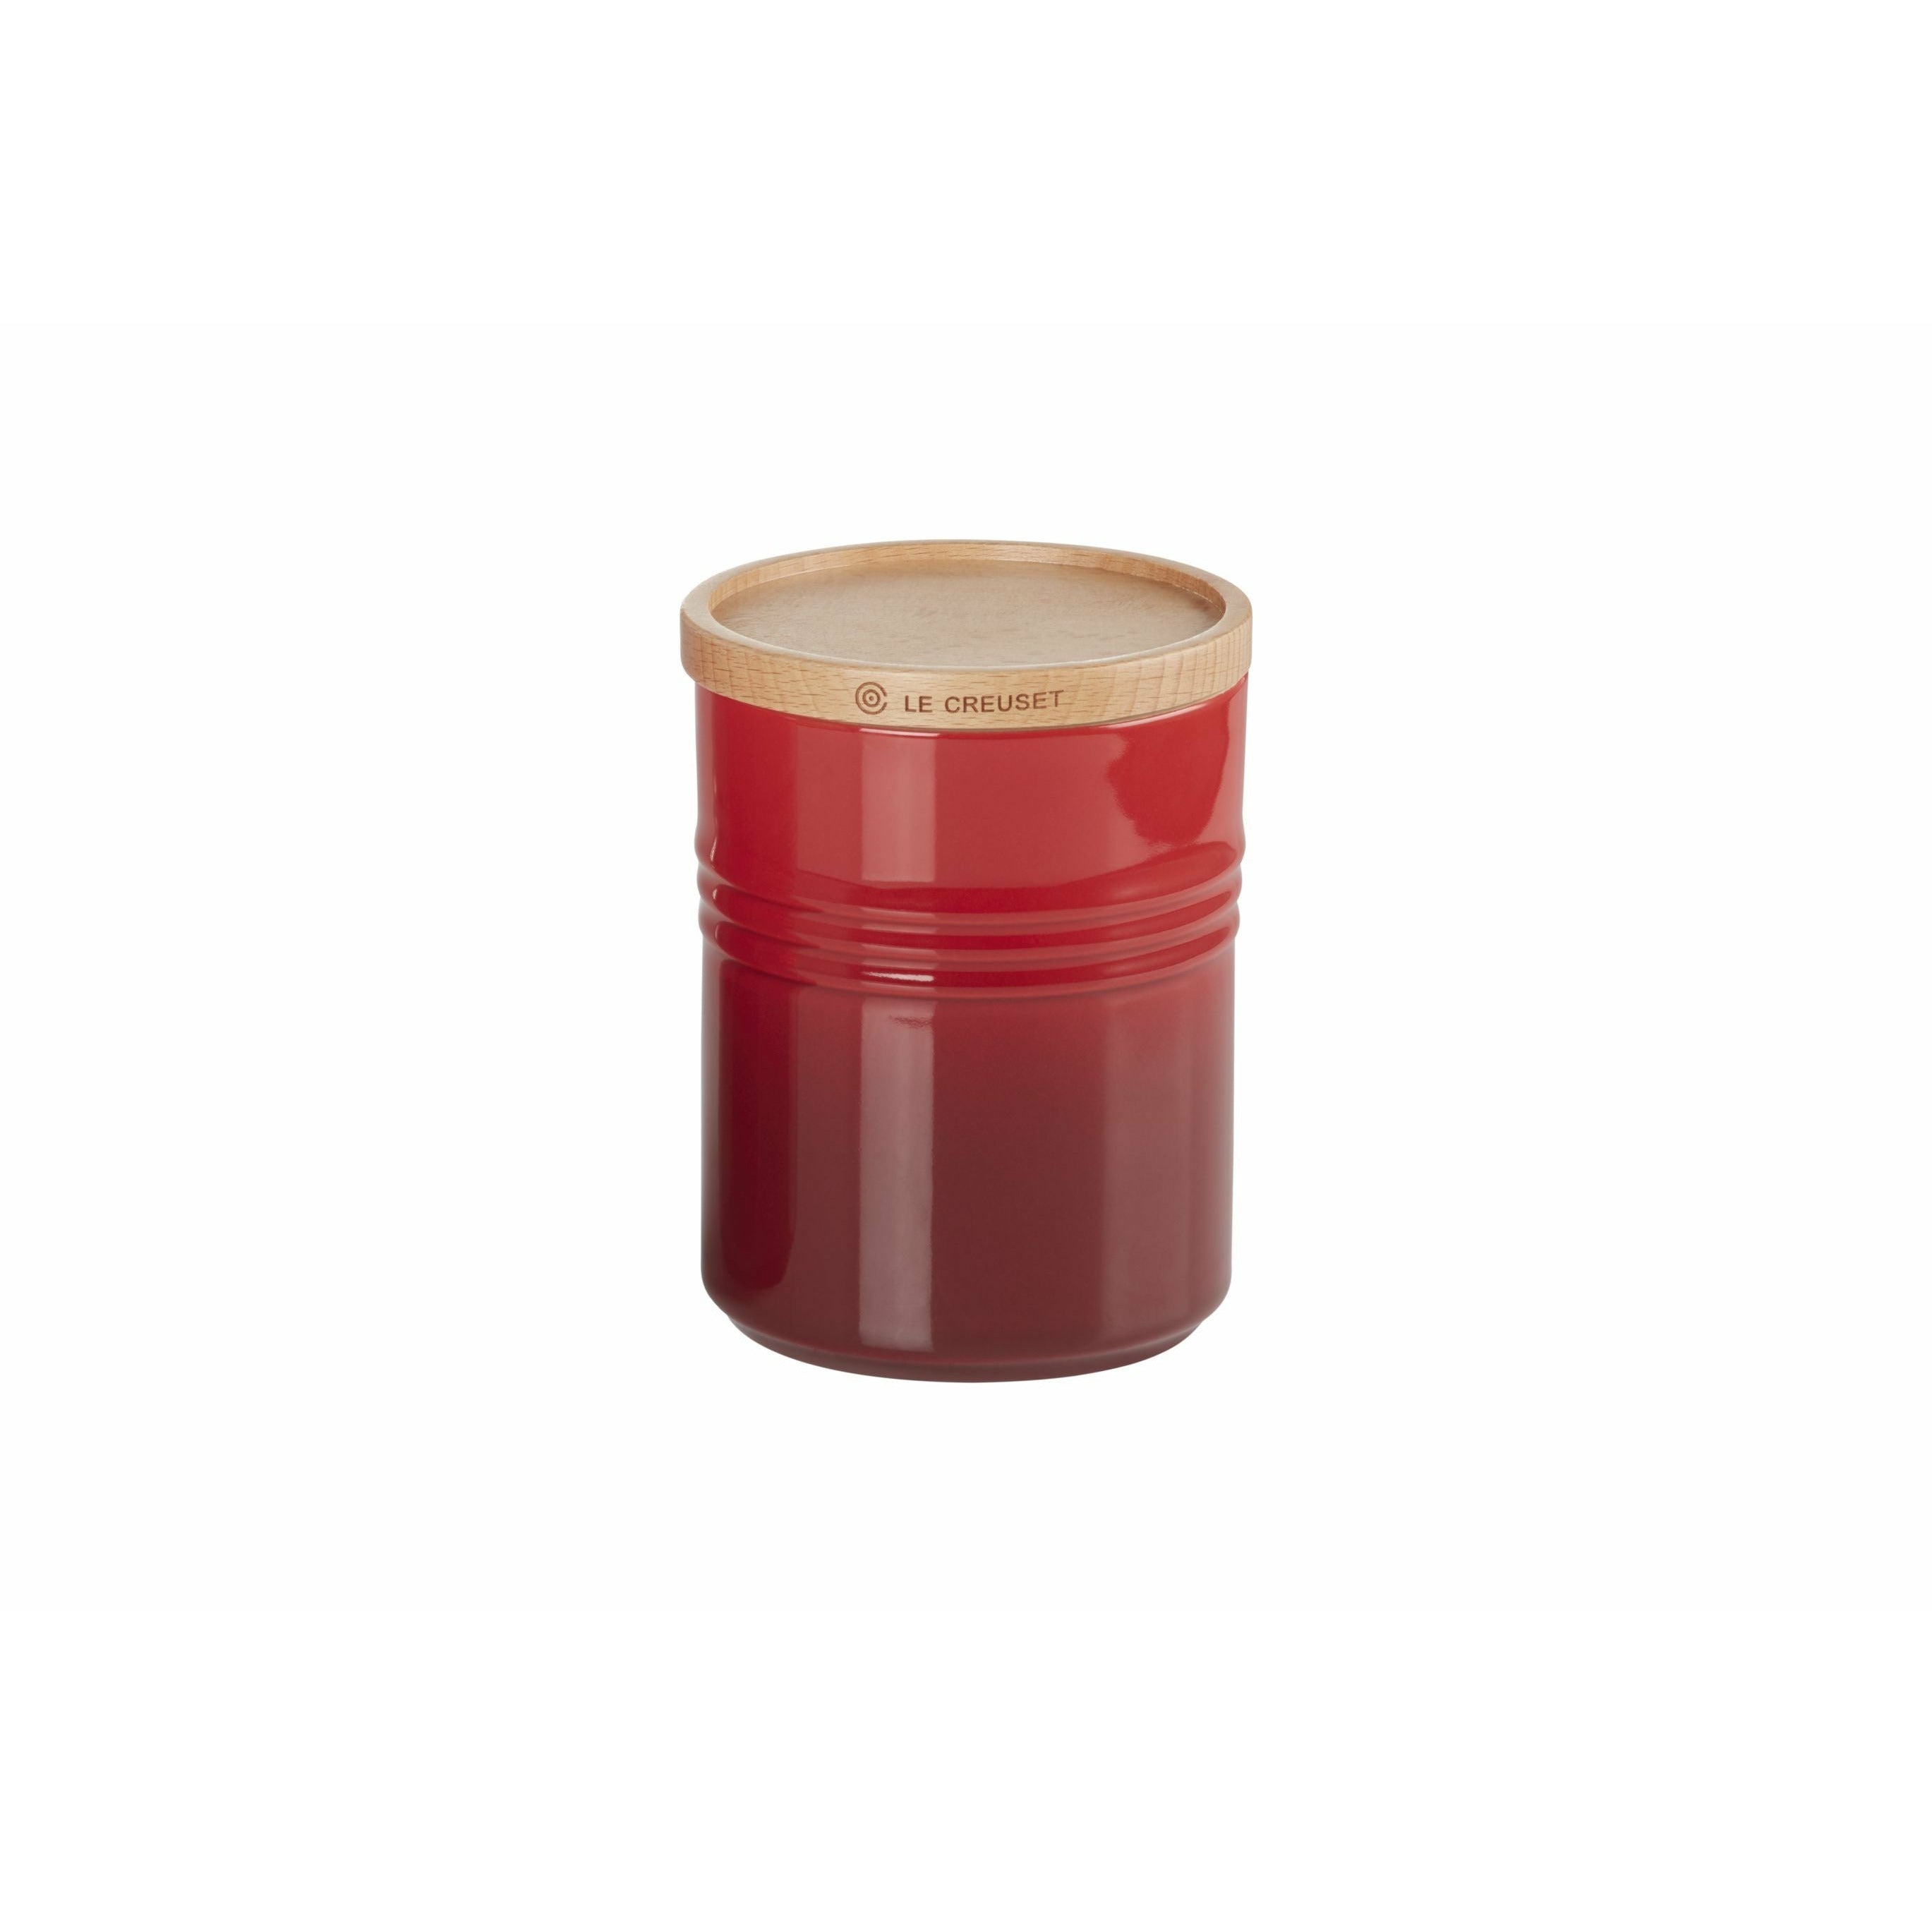 Le Creuset Pot de stockage 540 ml, rouge cerise